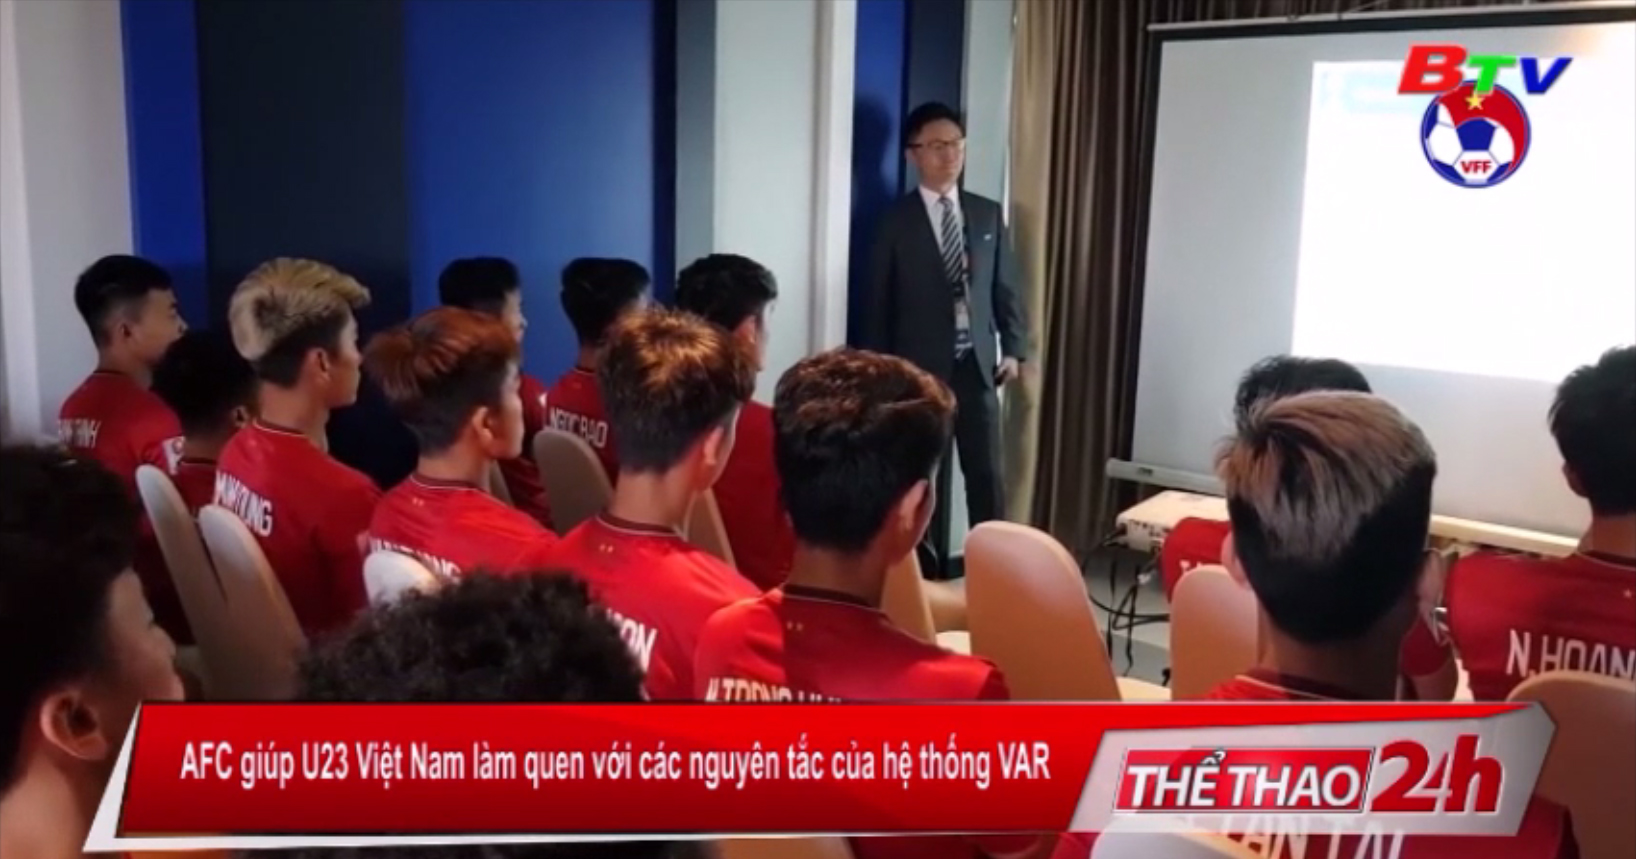 AFC giúp U23 Việt Nam làm quen với các nguyên tắc của hệ thống VAR